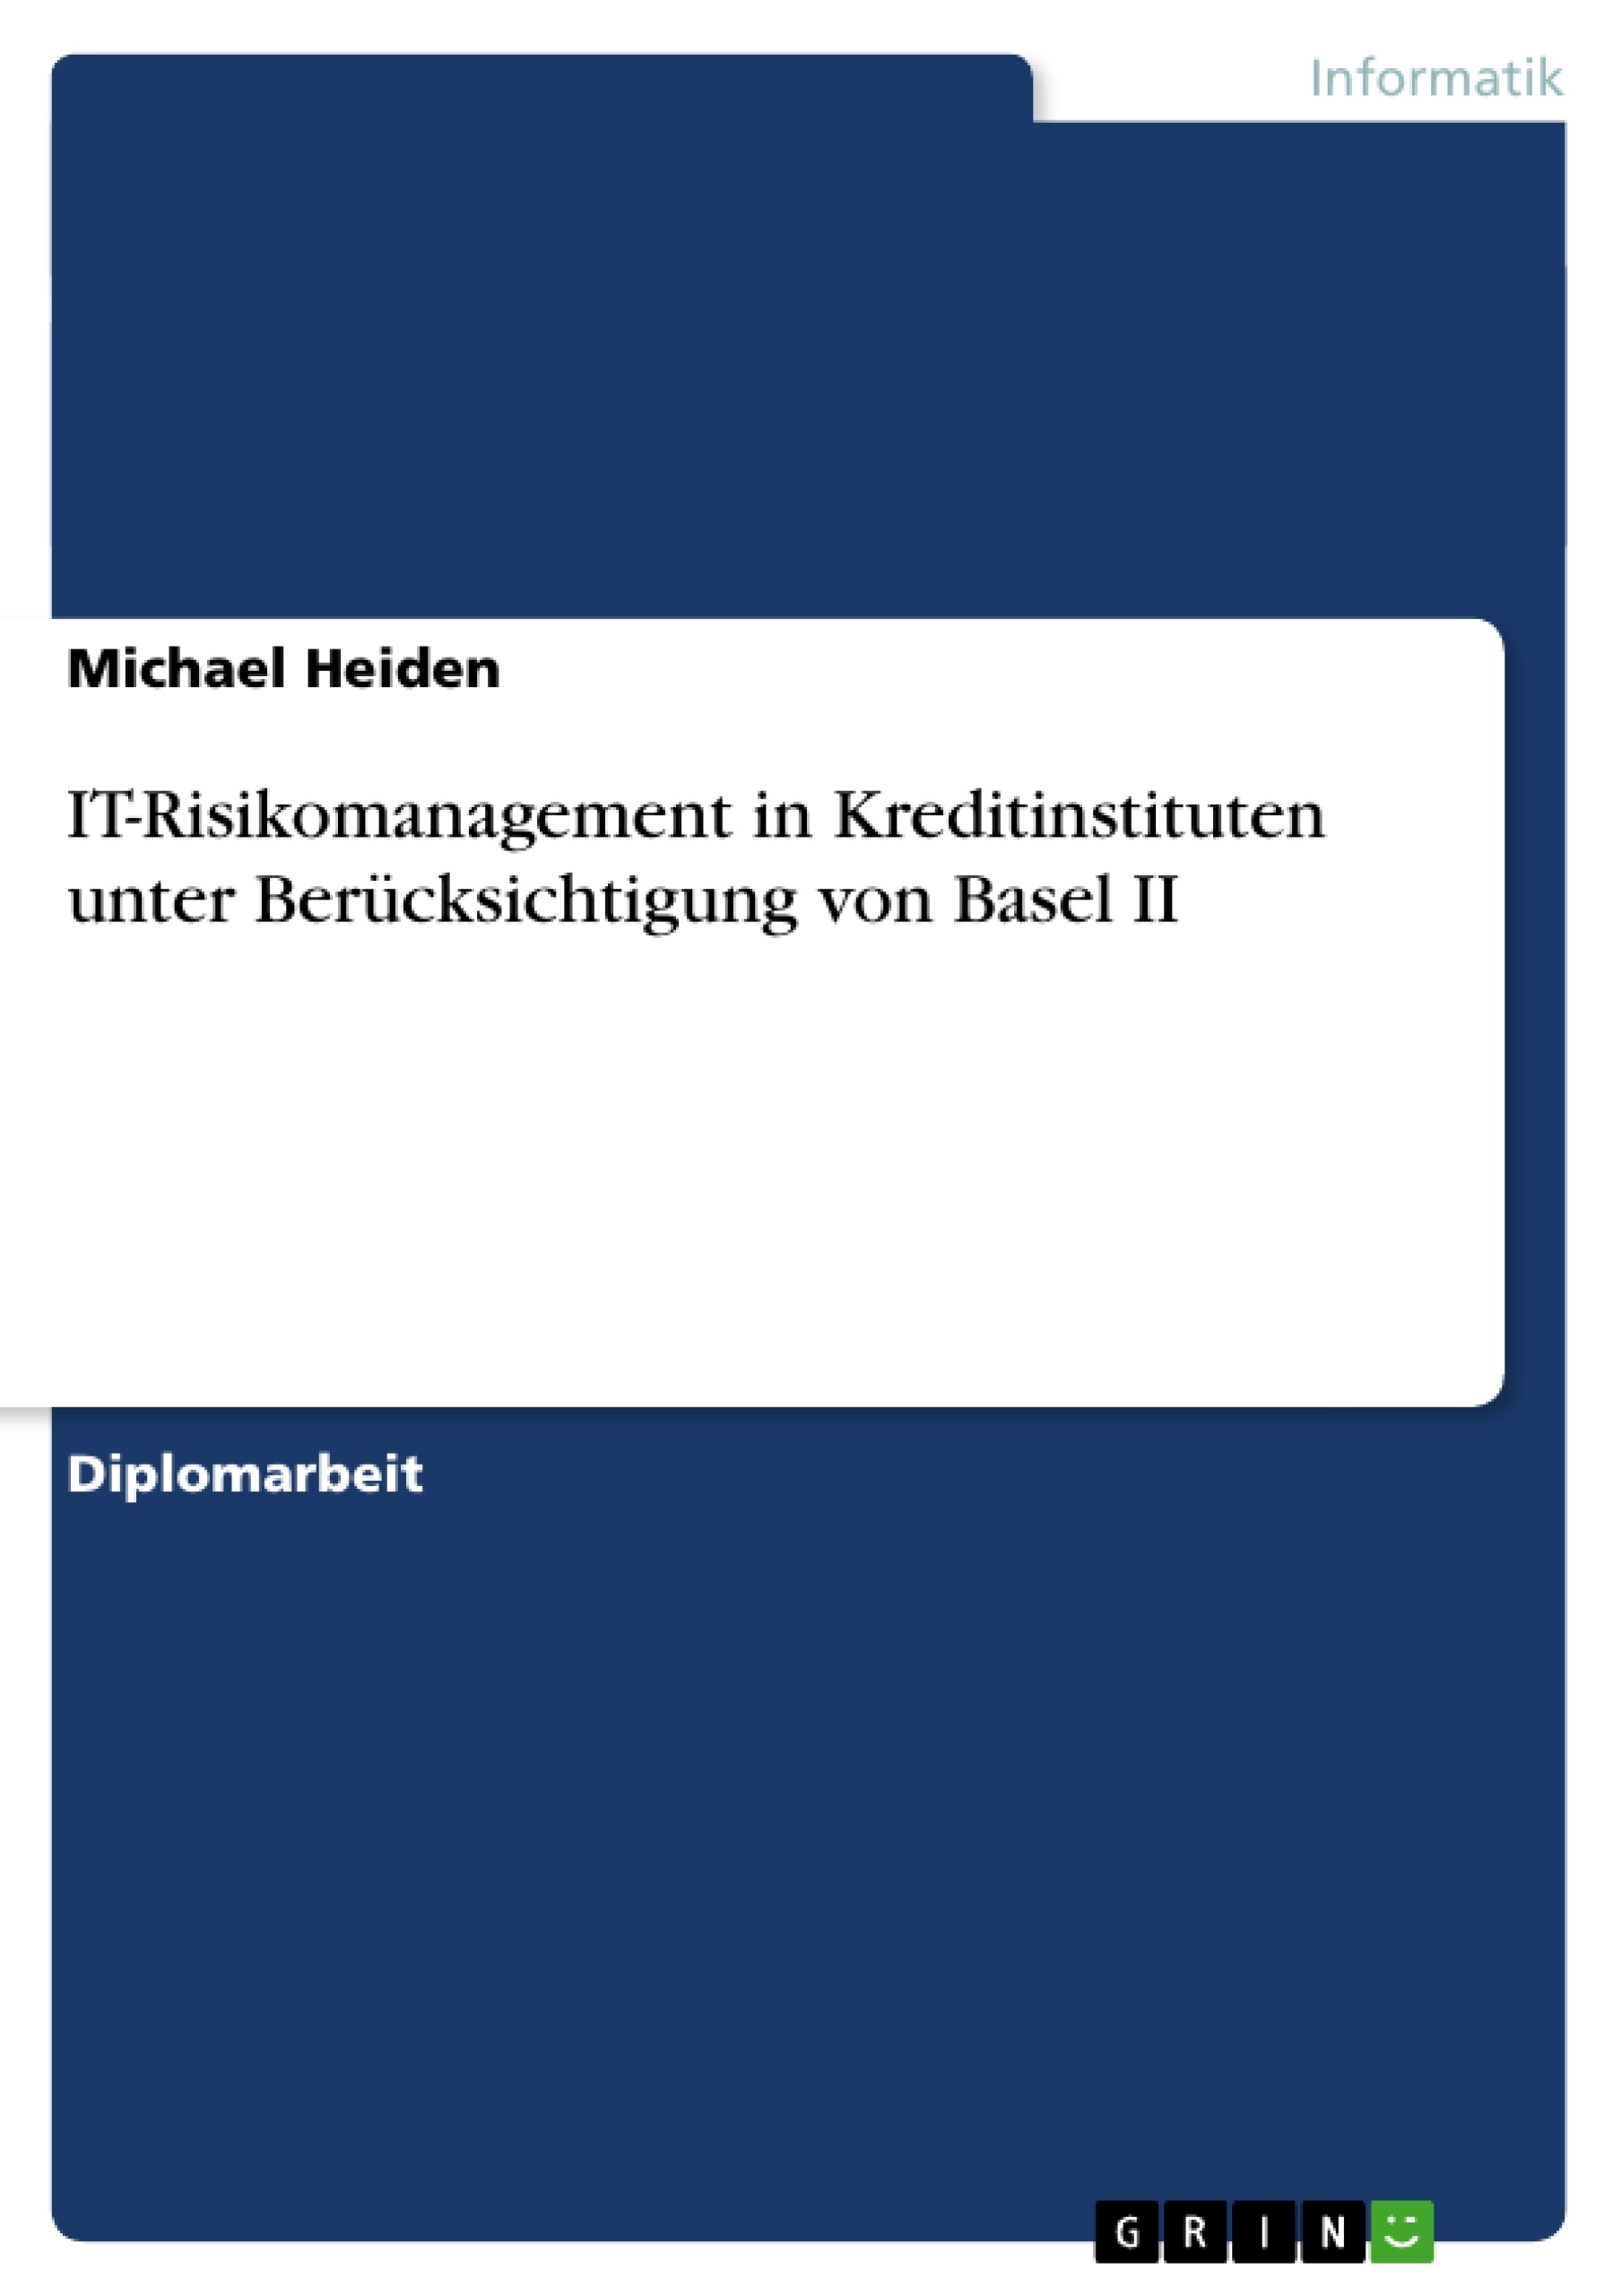 Título: IT-Risikomanagement in Kreditinstituten unter Berücksichtigung von Basel II